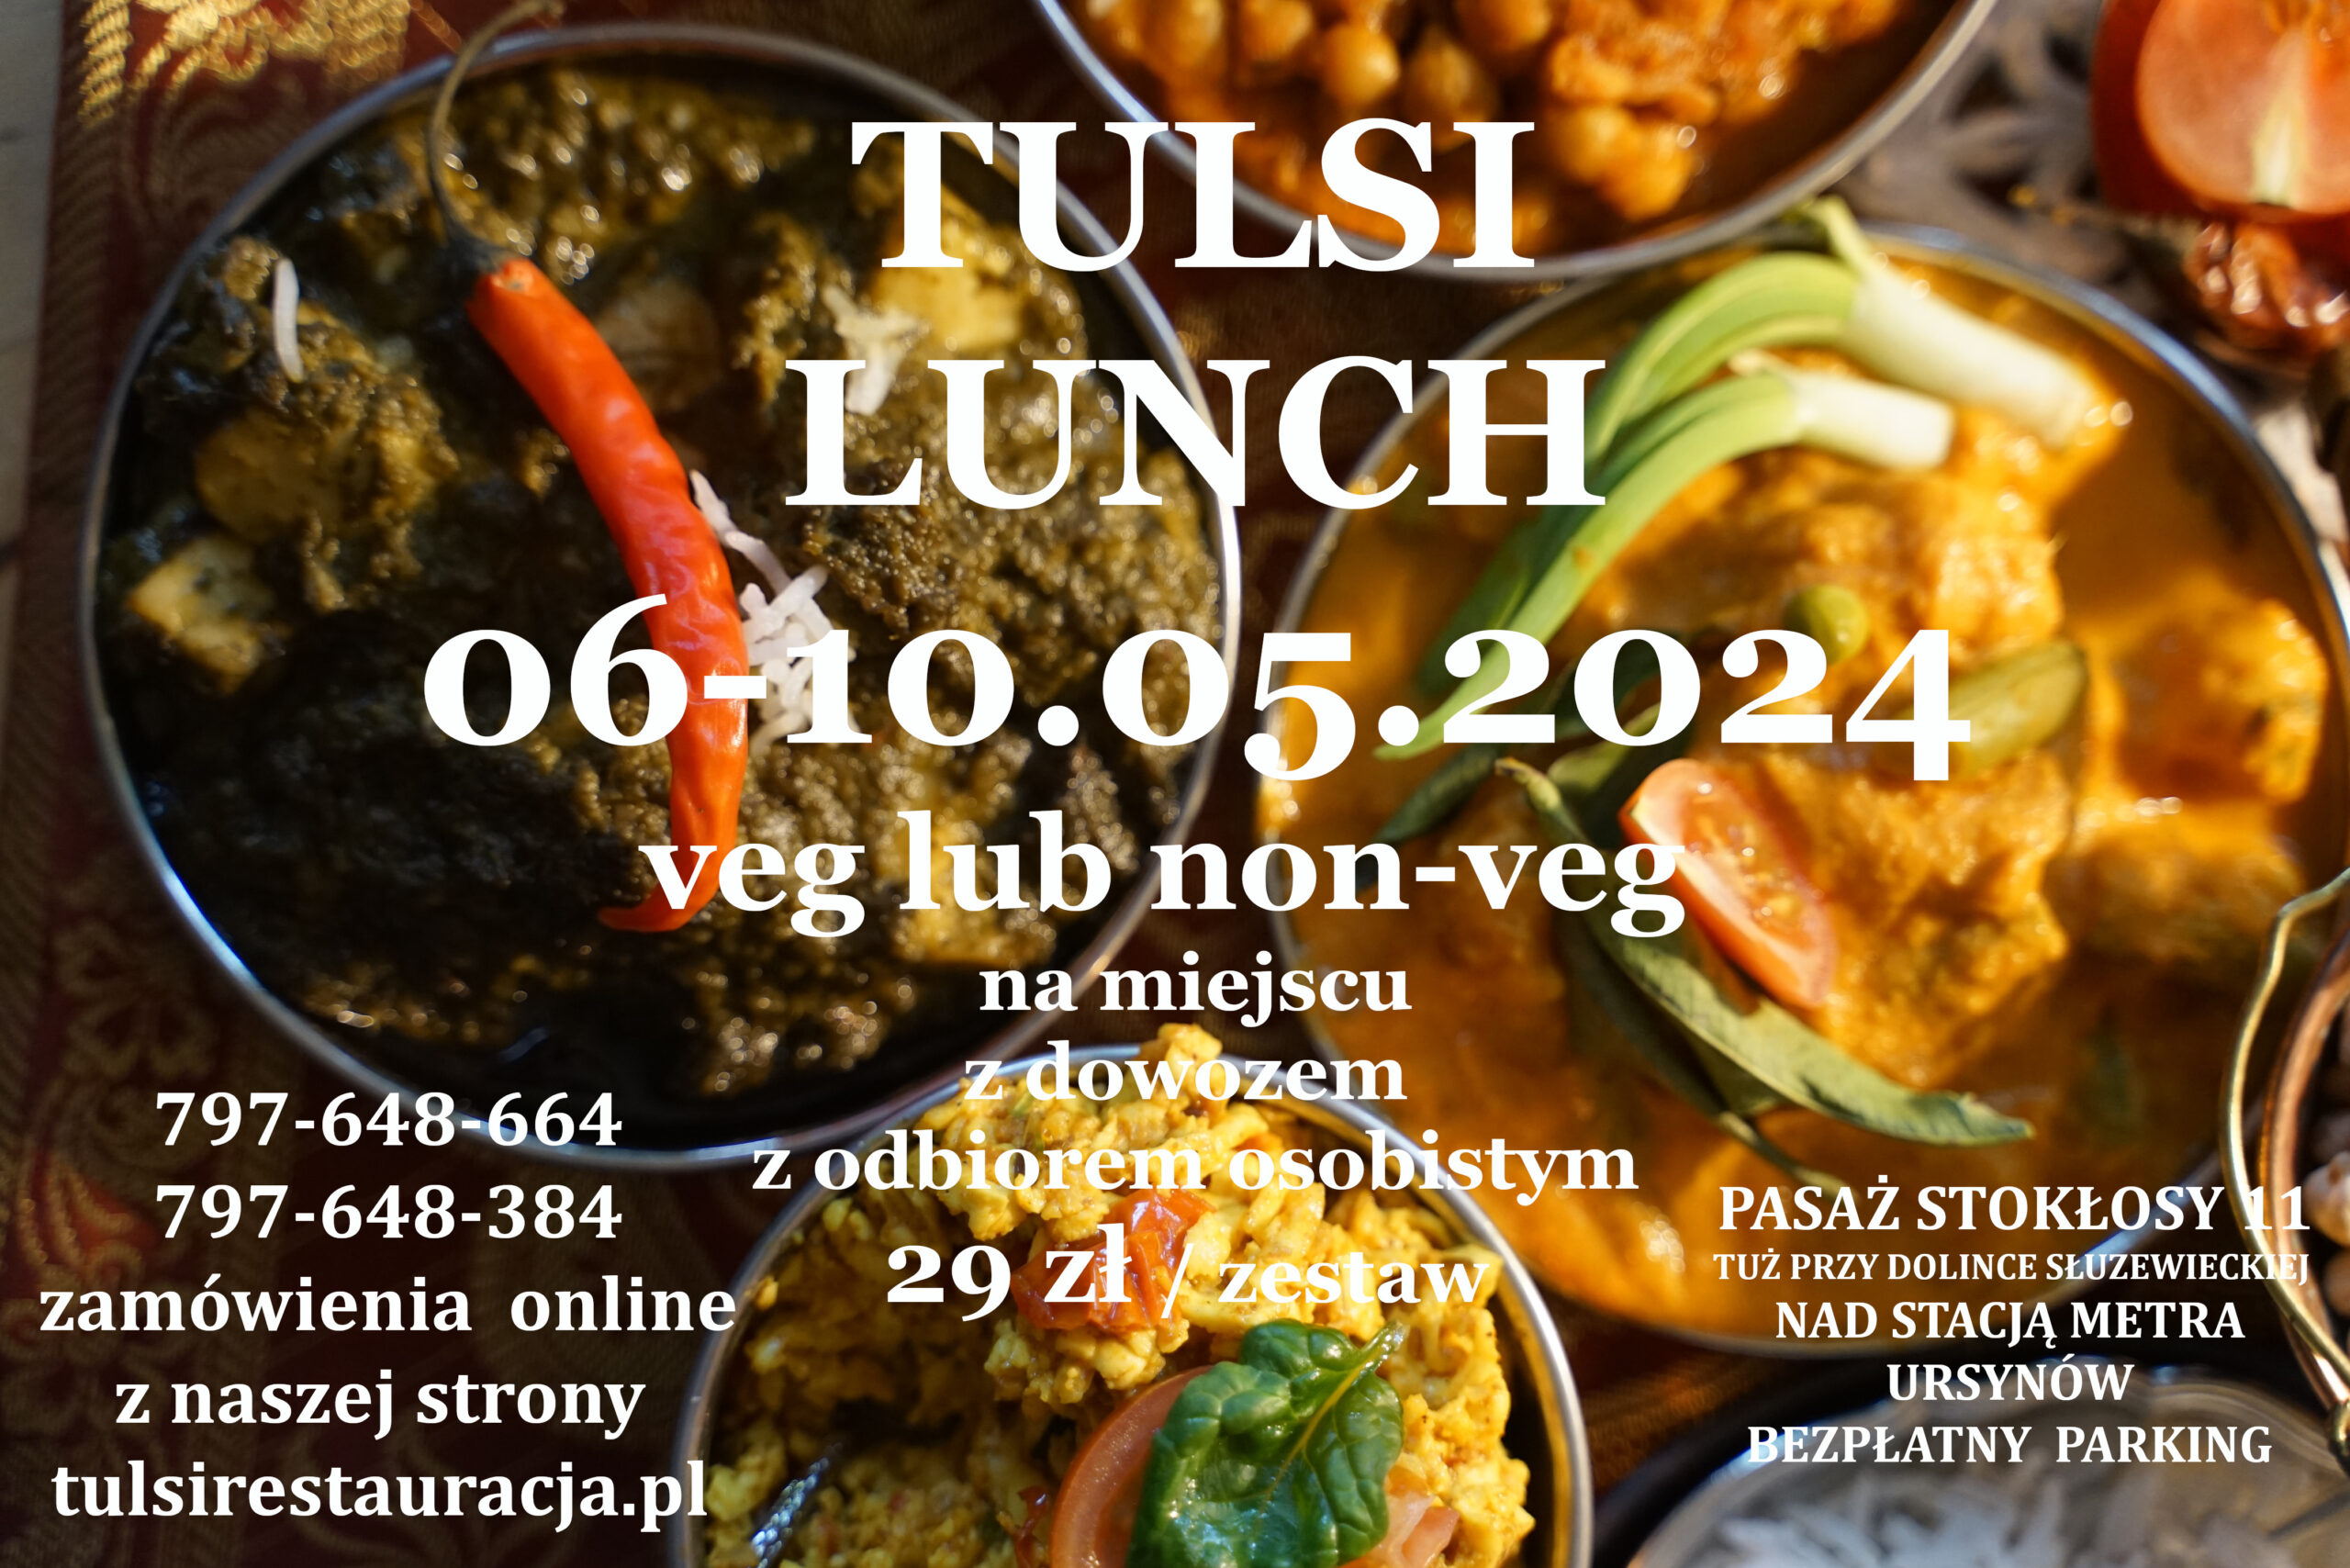 🙏🐣🍛 Tulsi Lunch 06-10.05.2024    (29 zł) do wyboru z:  VEG /NON-VEG  – na miejscu, na wynos i dowóz (min 3 zestawów) 🙏 Lunch w Tulsi  Ursynów – Mokotow🙏